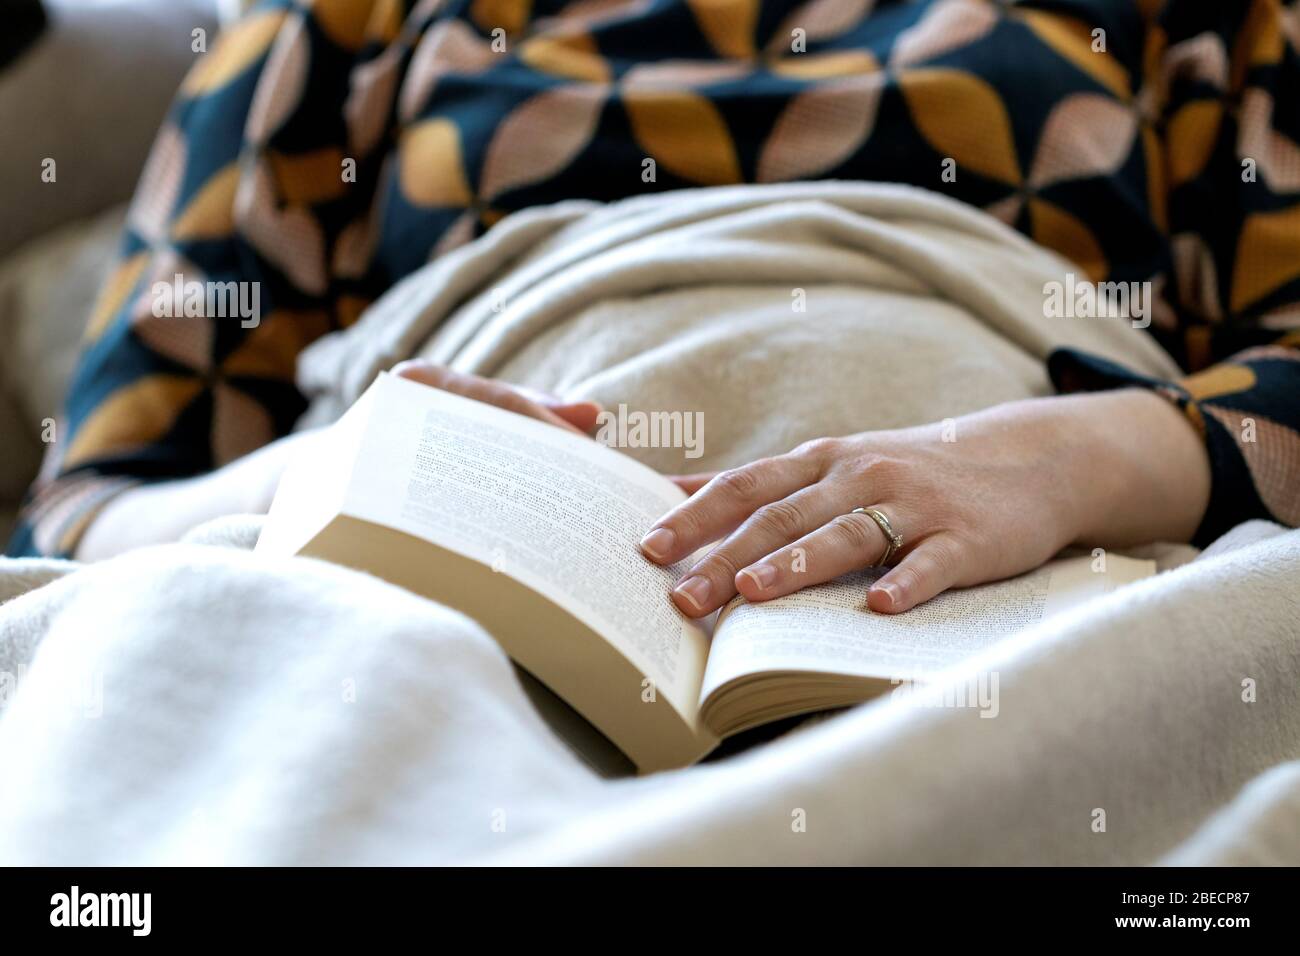 Un ritratto di una persona addormentata sotto una coperta mentre legge un libro. La mano della persona è ancora sul libro al punto in cui ha dozed fuori Foto Stock